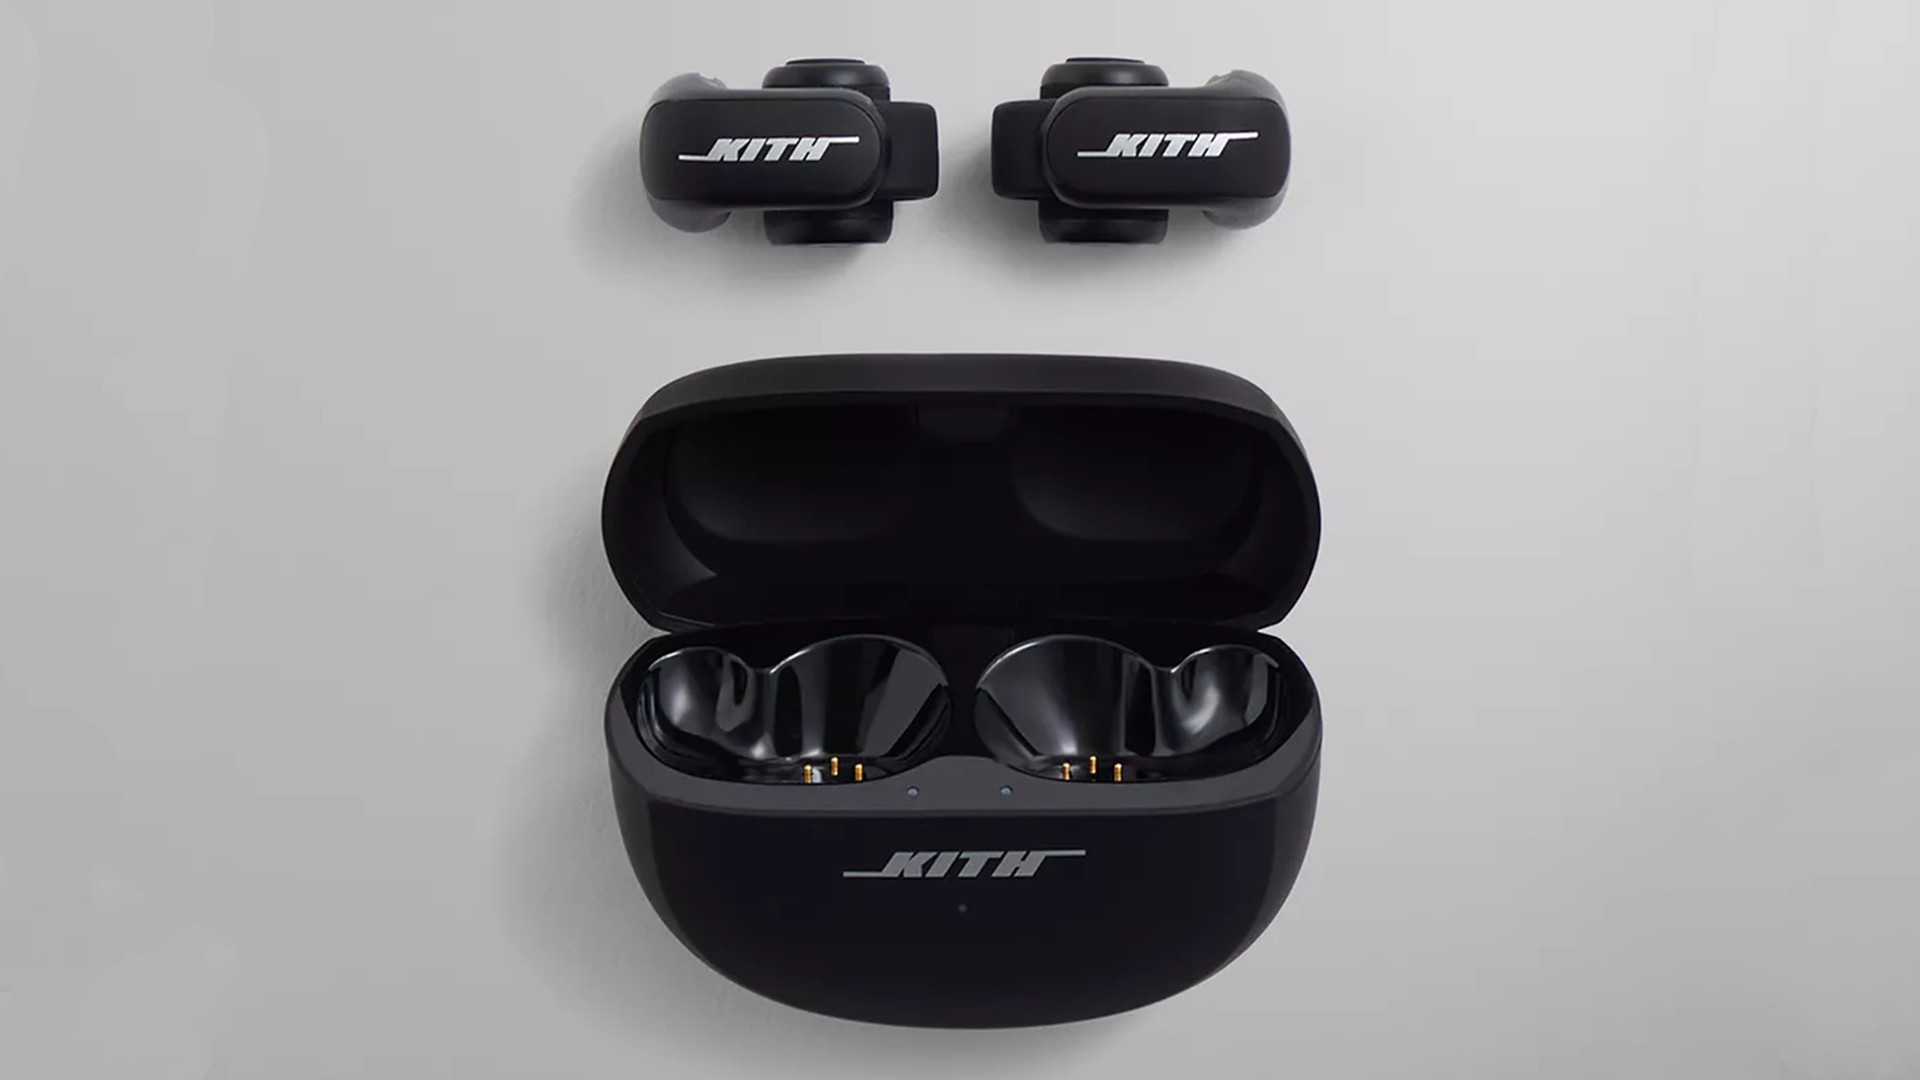 Наушники Bose Ultra Open прикрепляются к ушам, чтобы вы могли слышать все вокруг.